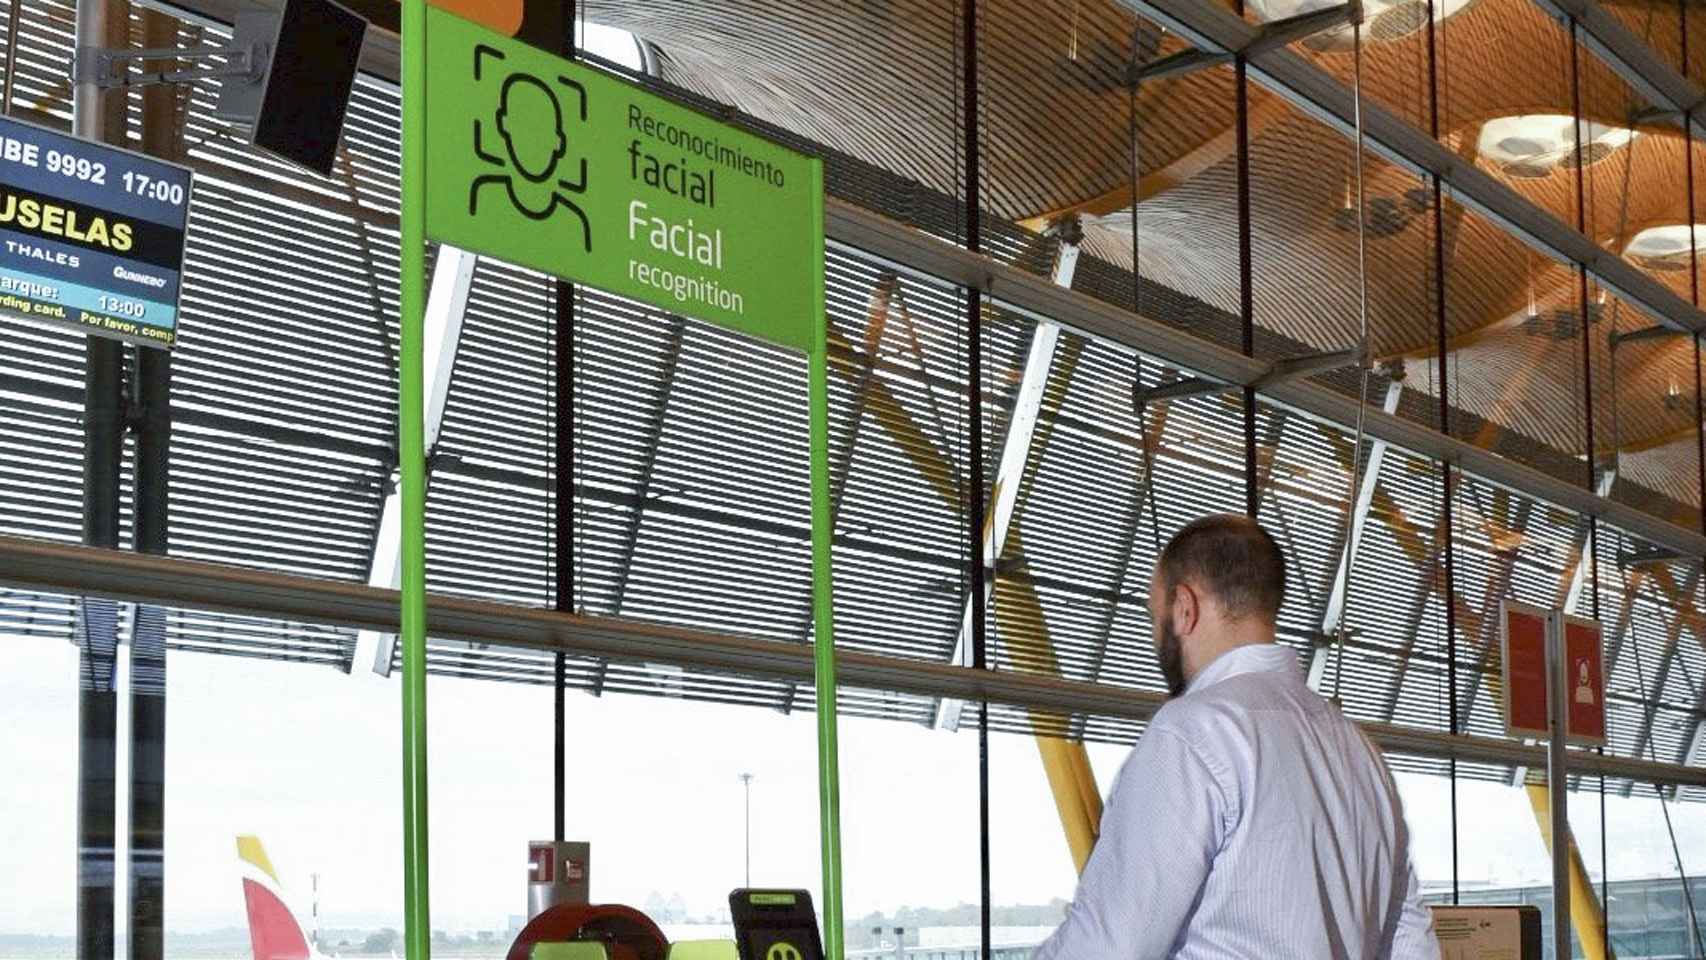 Puerta de embarque con reconocimiento facial en el aeropuerto Adolfo Suárez Madrid-Barajas.